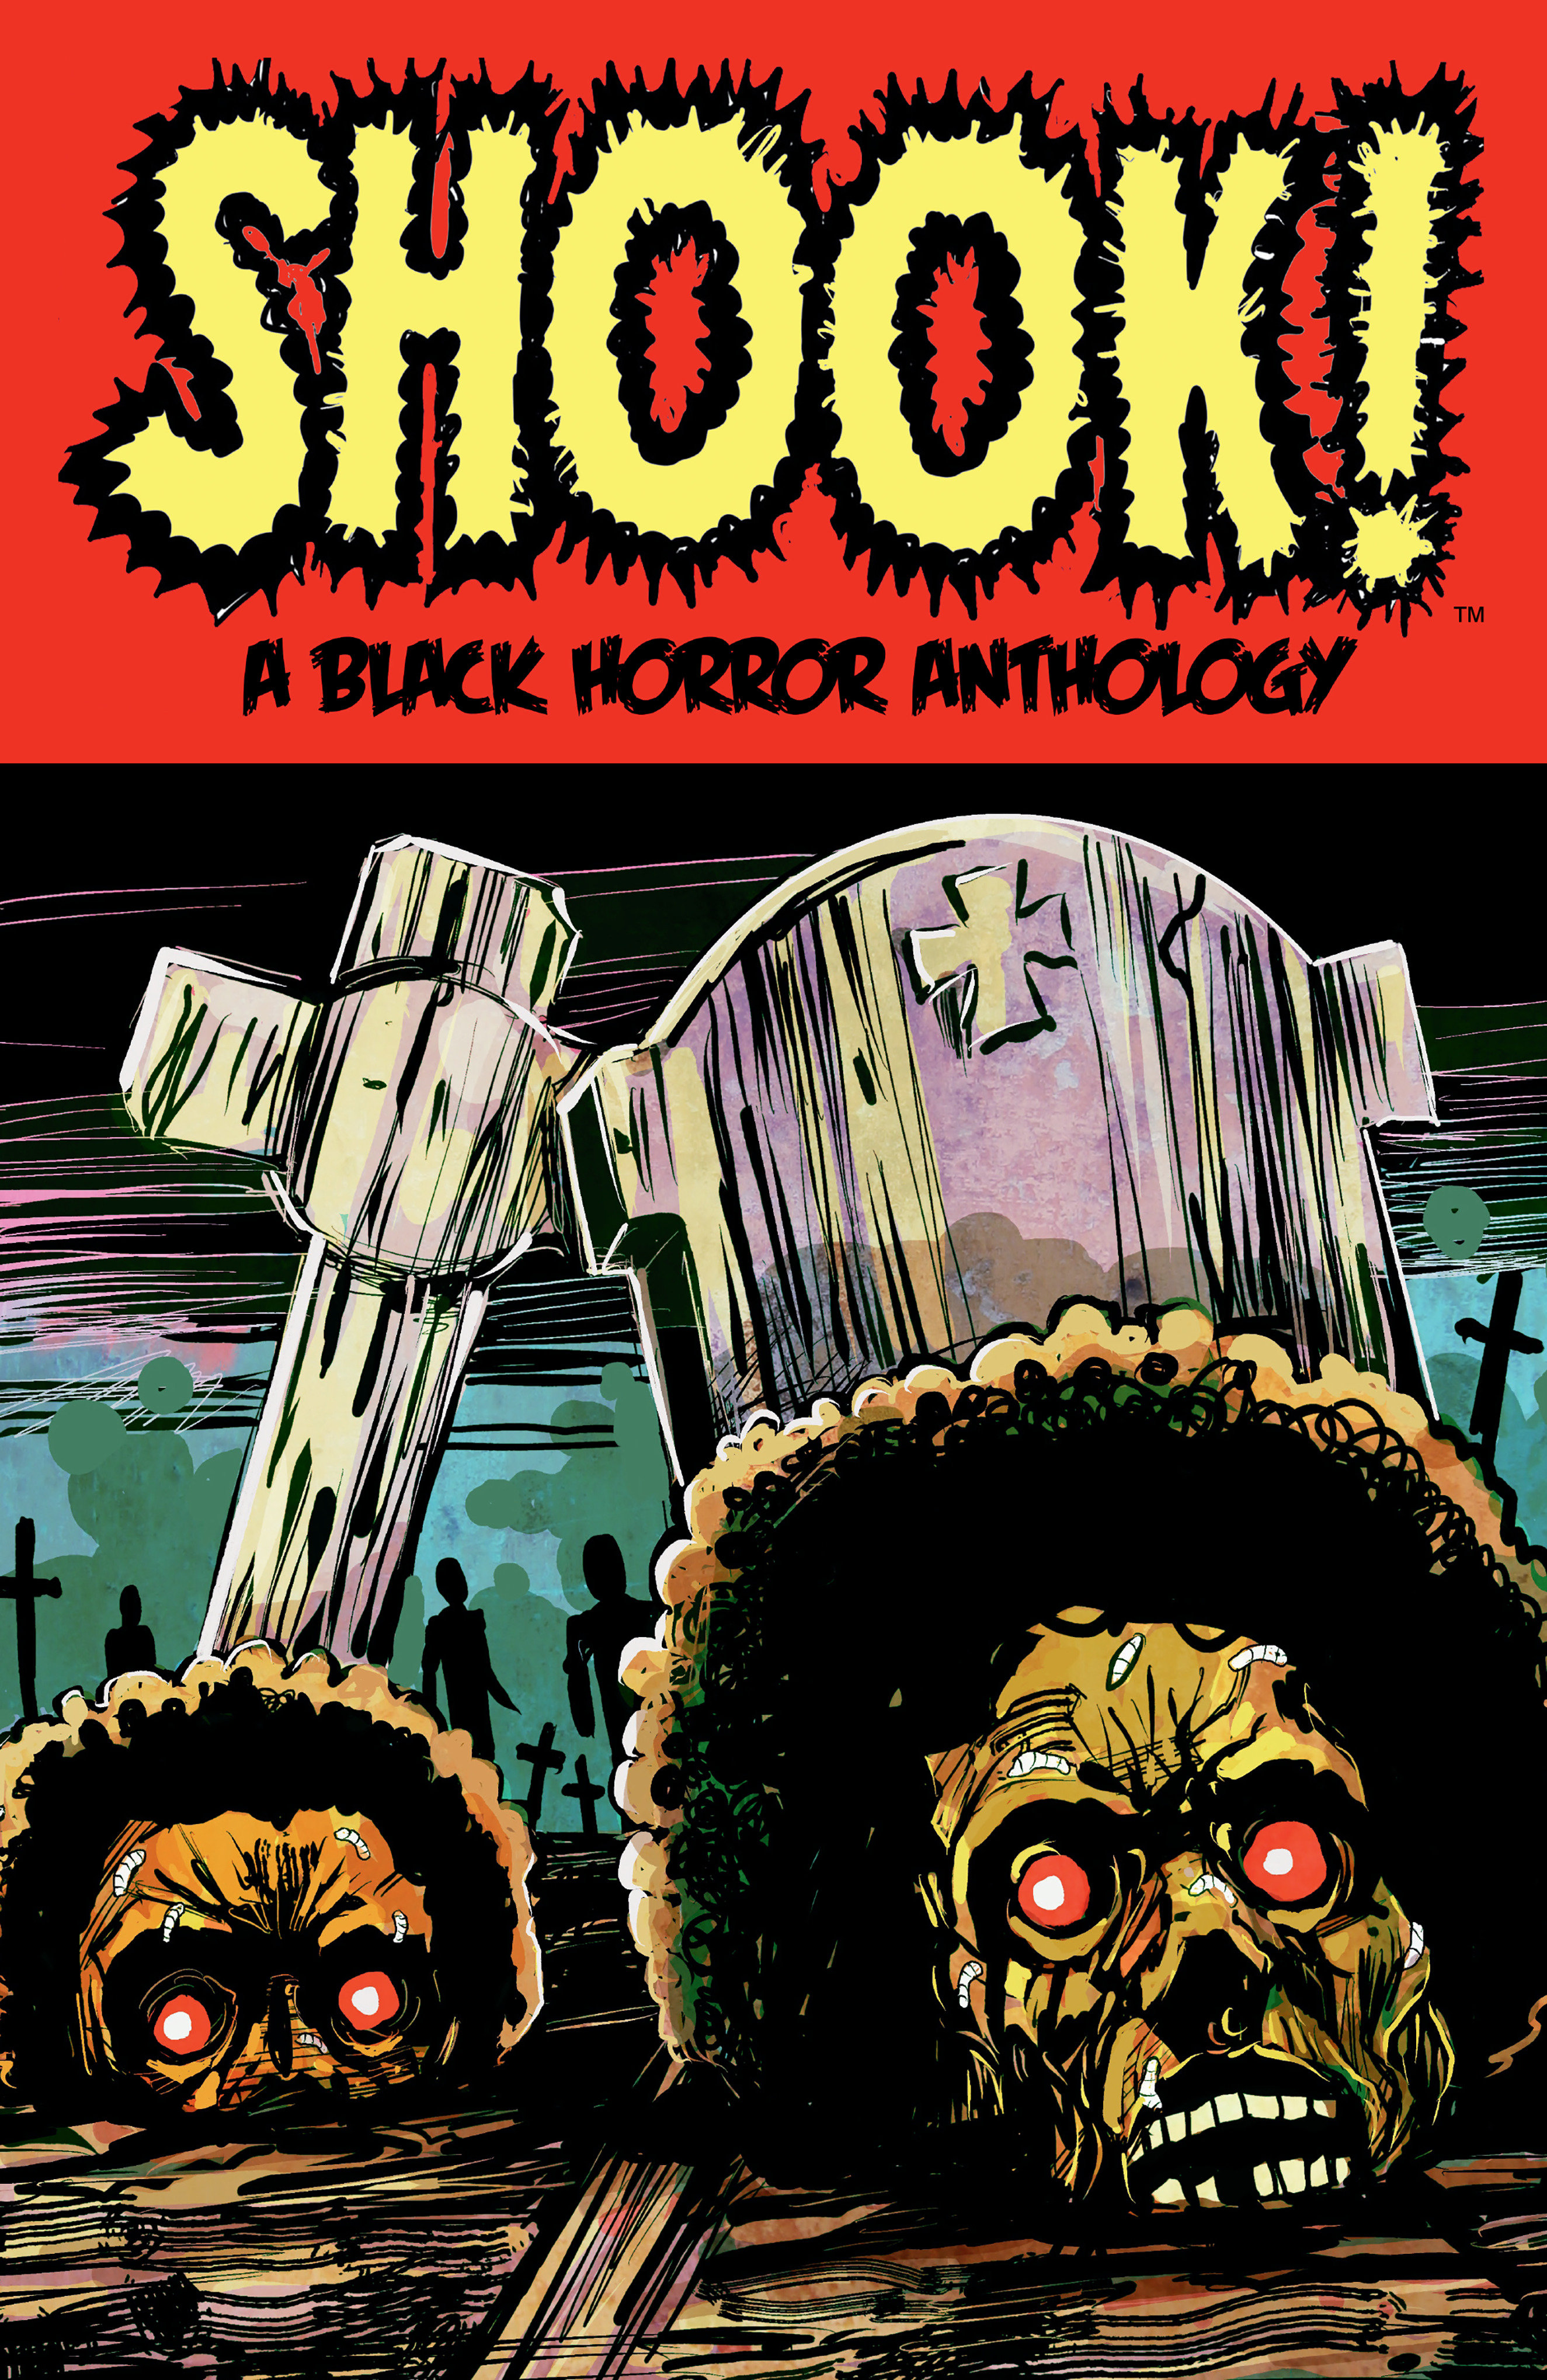 Shook! A Black Horror Anthology Graphic Novel